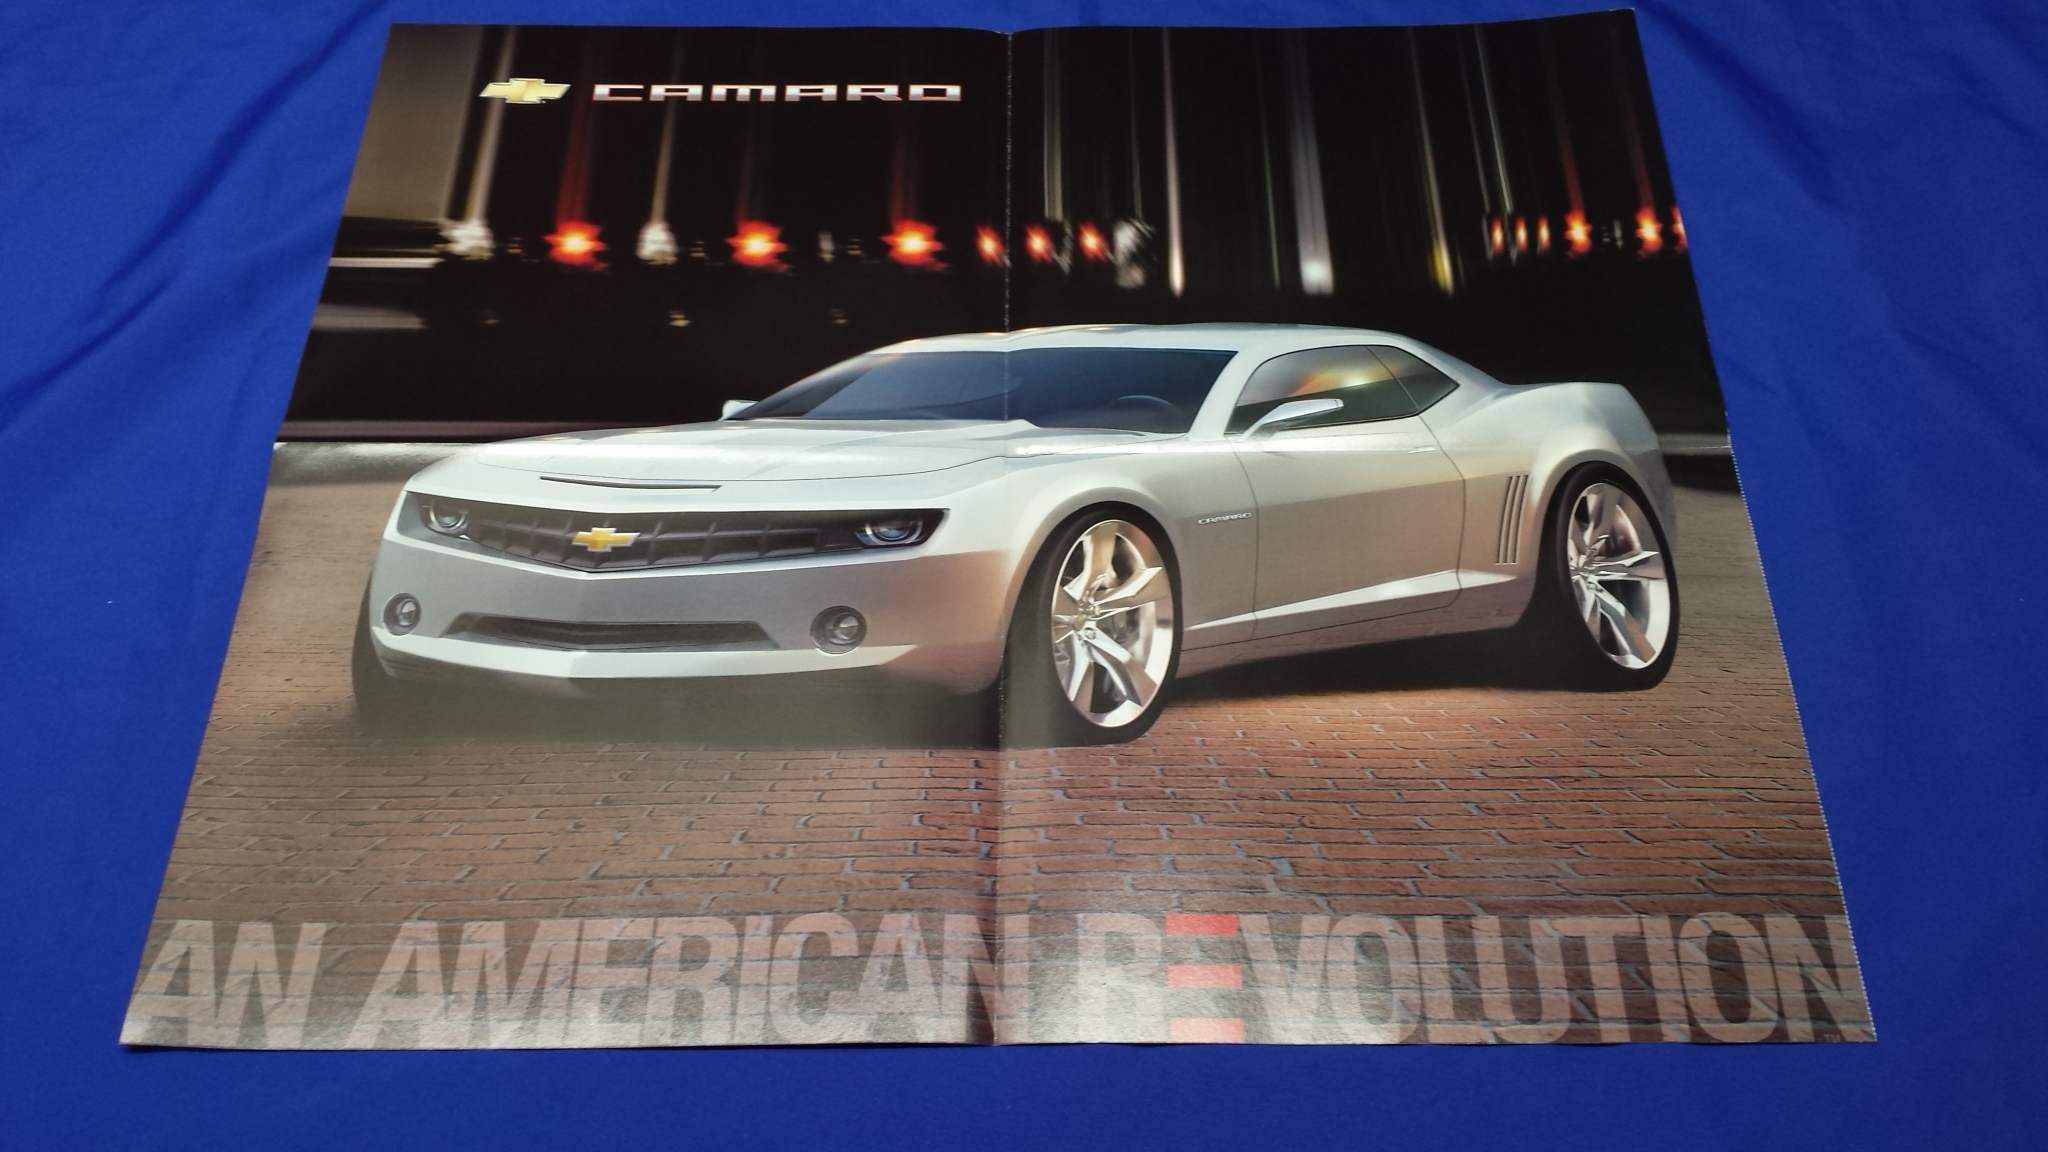 2010 Chevy Camaro Concept Poster